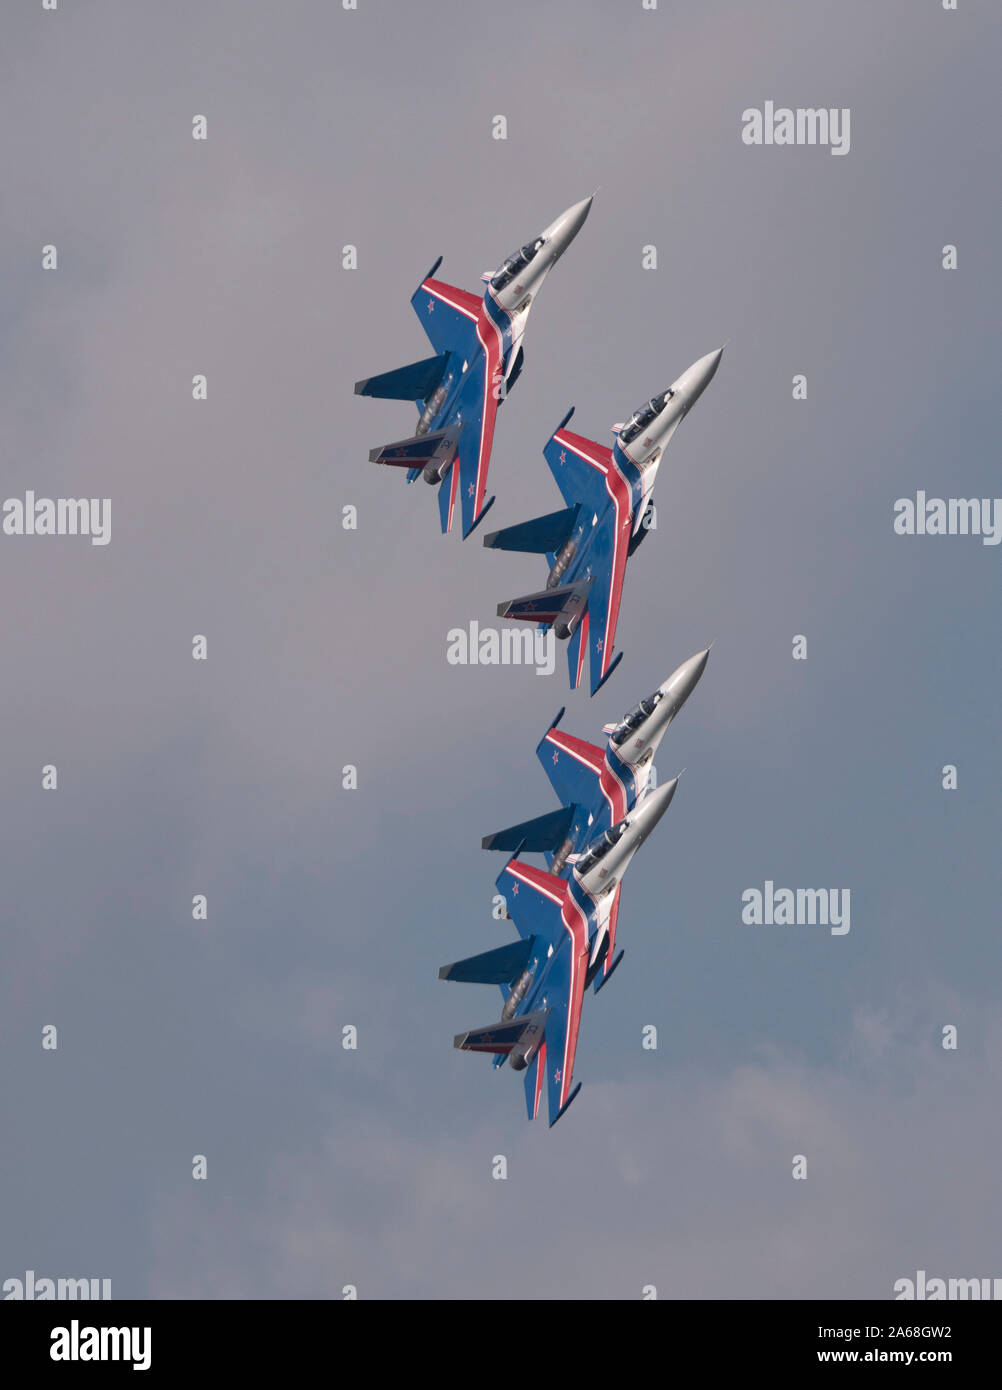 Mosca Russia Zhukovsky Airfield 31 Agosto 2019: il russo Cavalieri Russkie Vityazi aerobatic team esegue una dimostrazione di volo con acrobazia fi Foto Stock